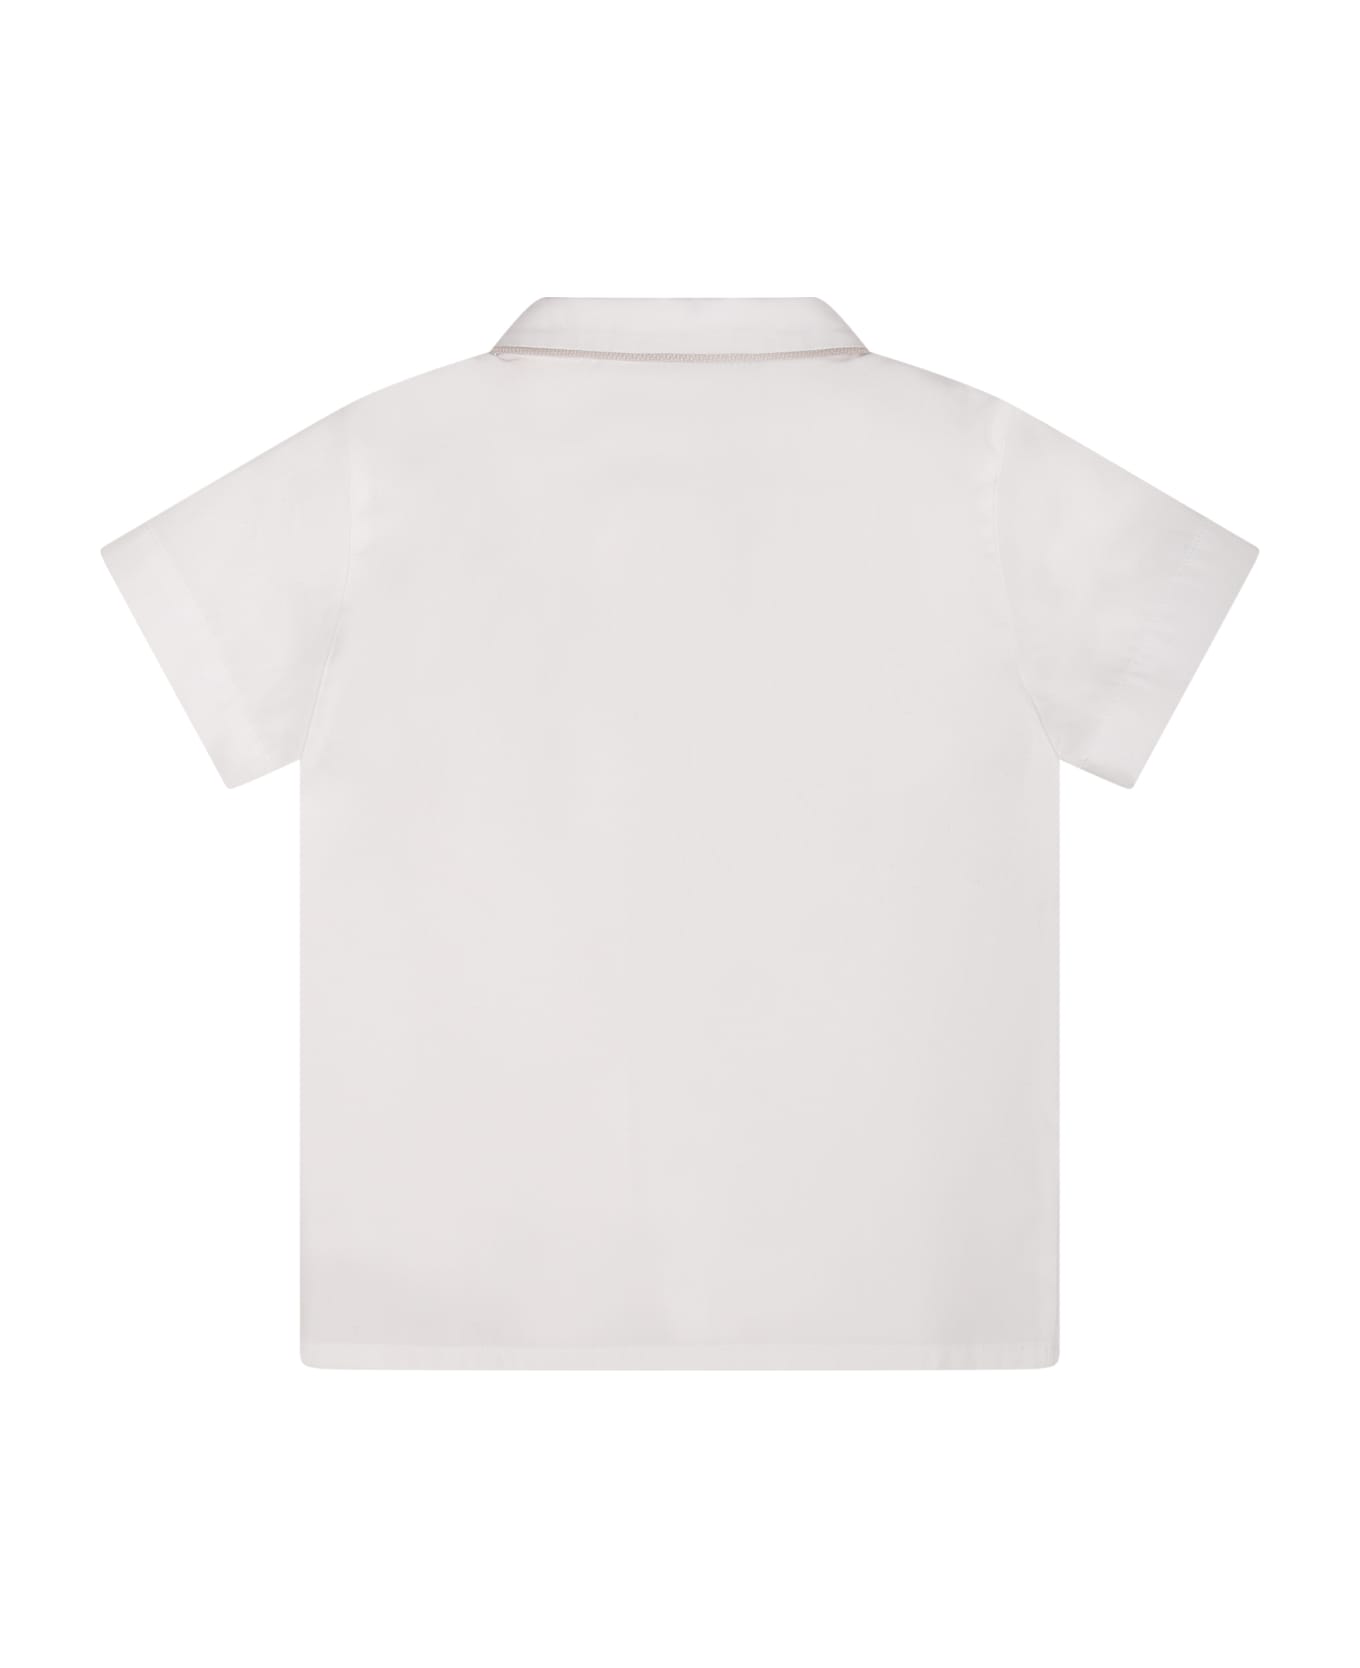 Little Bear White Shirt For Baby Boy - White